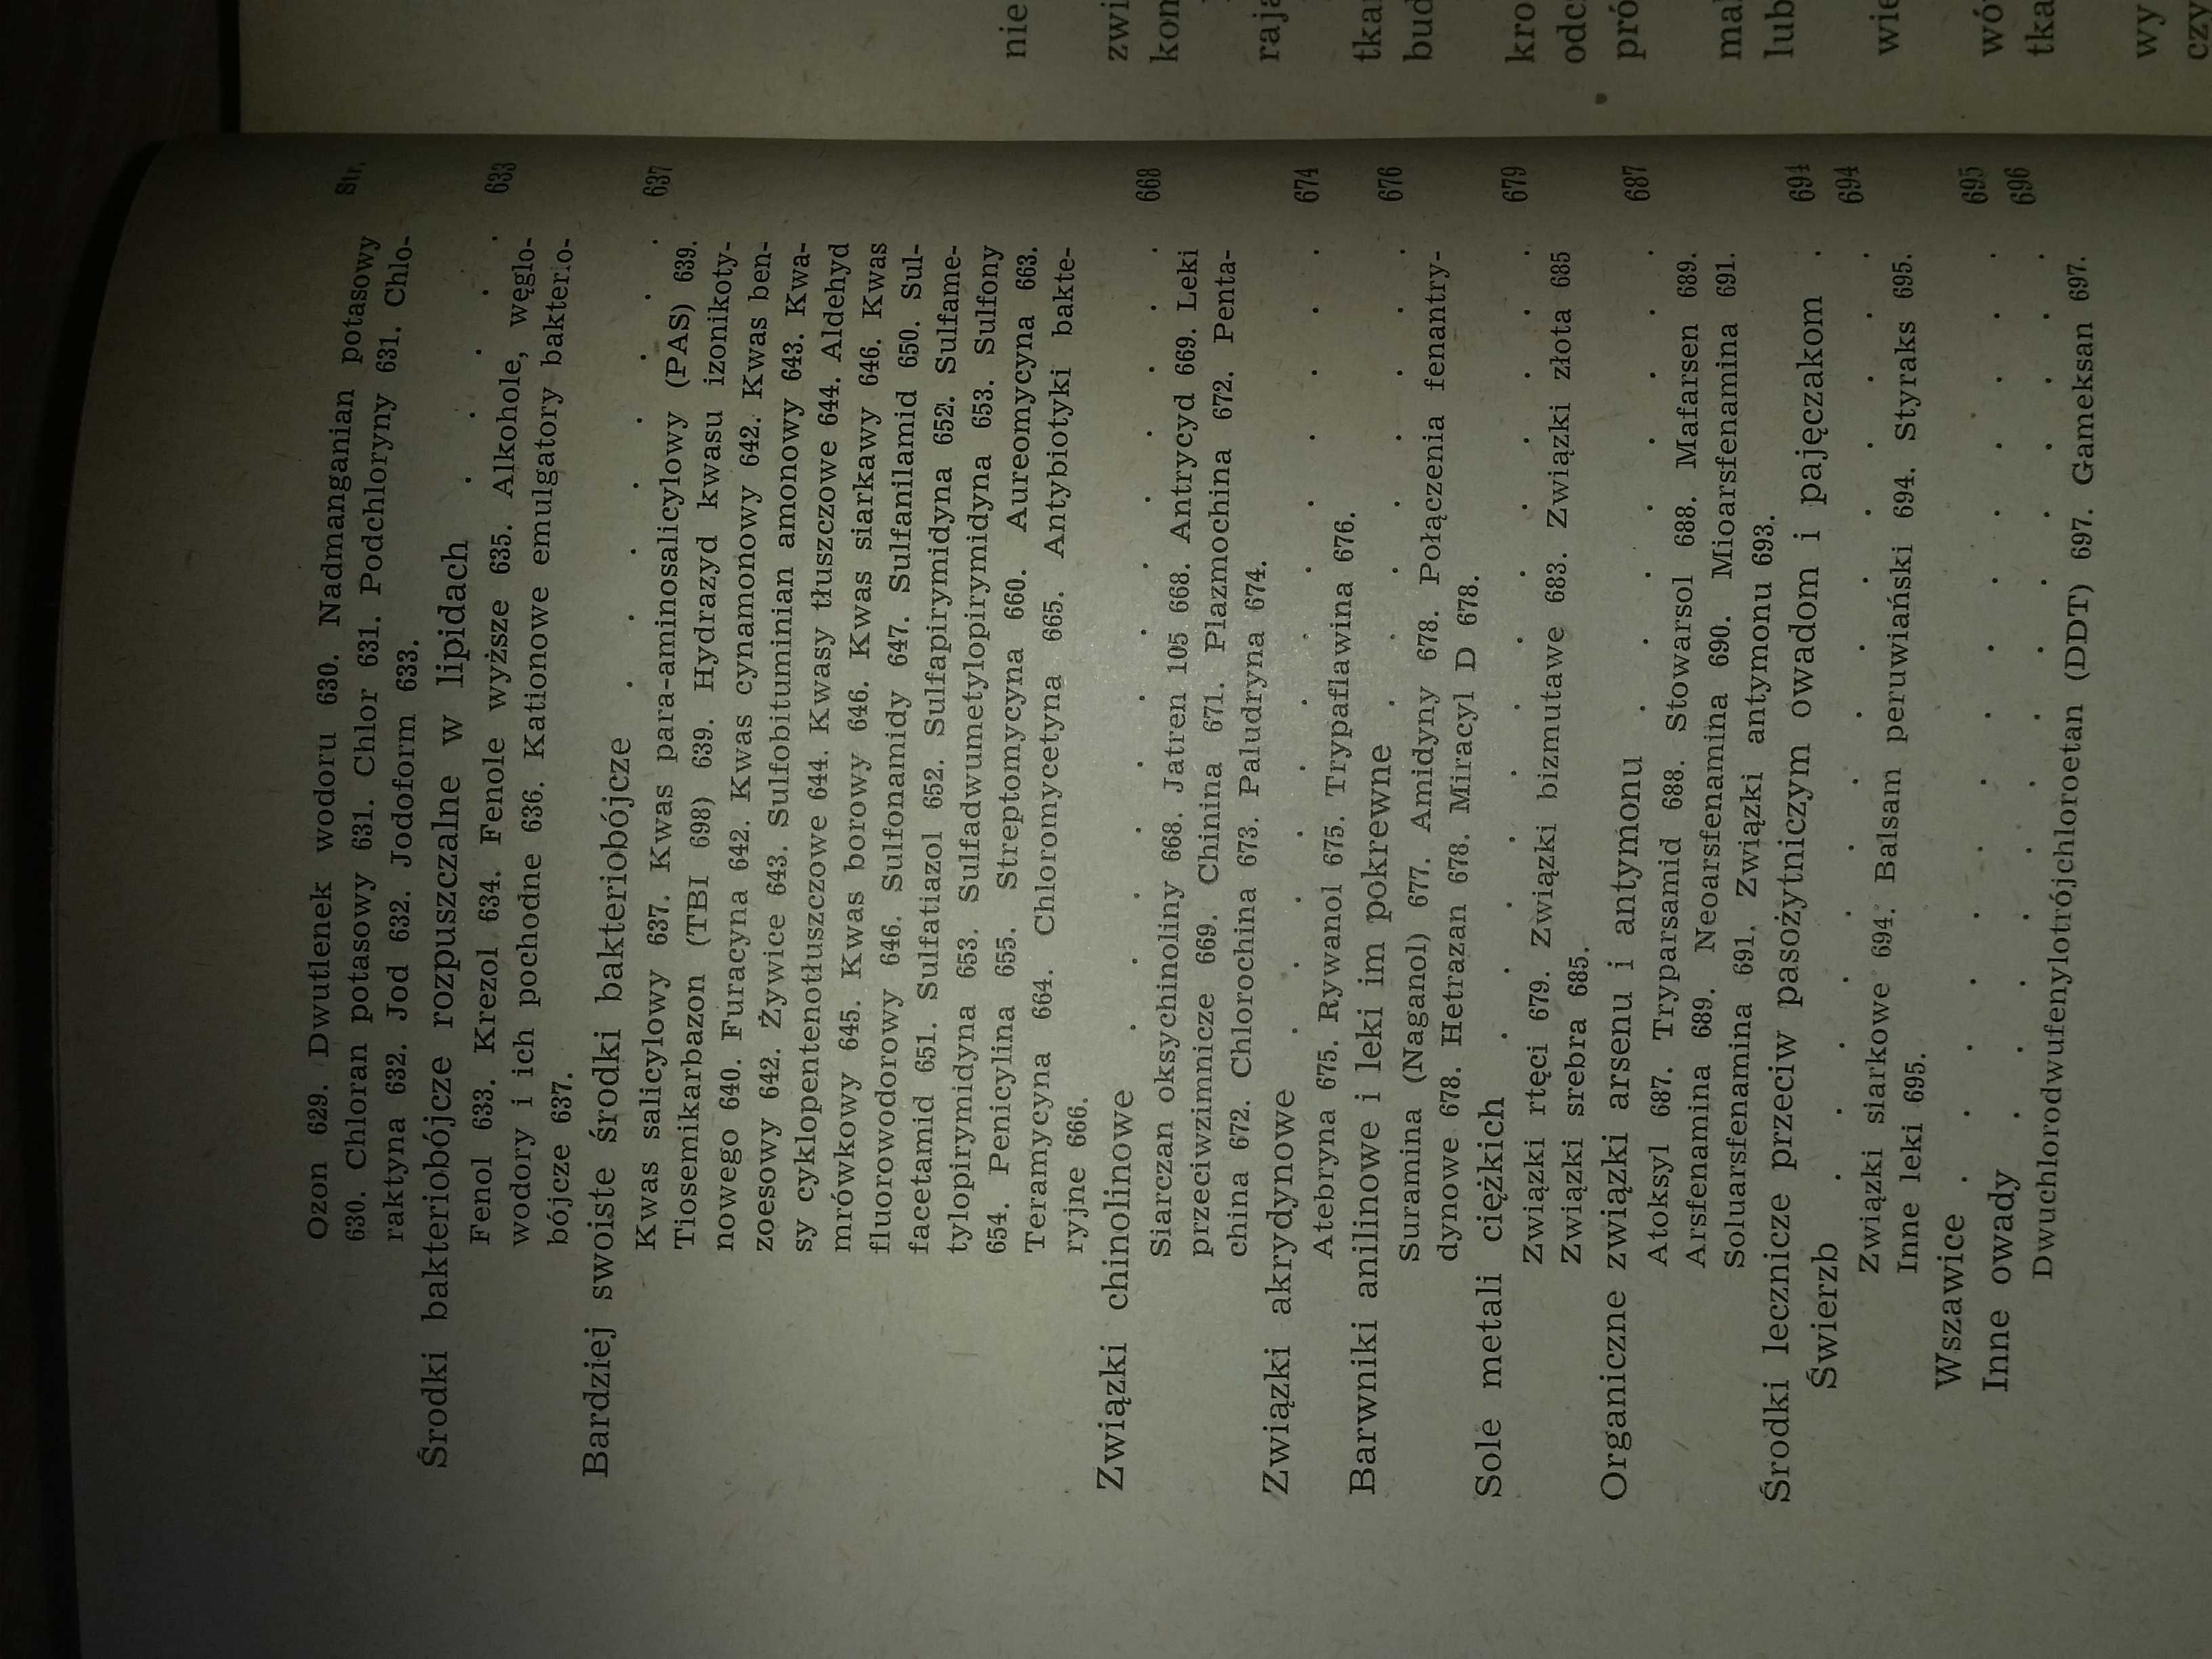 Farmakologia 1954 PRL lekarze medycyna studenci kolekcjonerzy